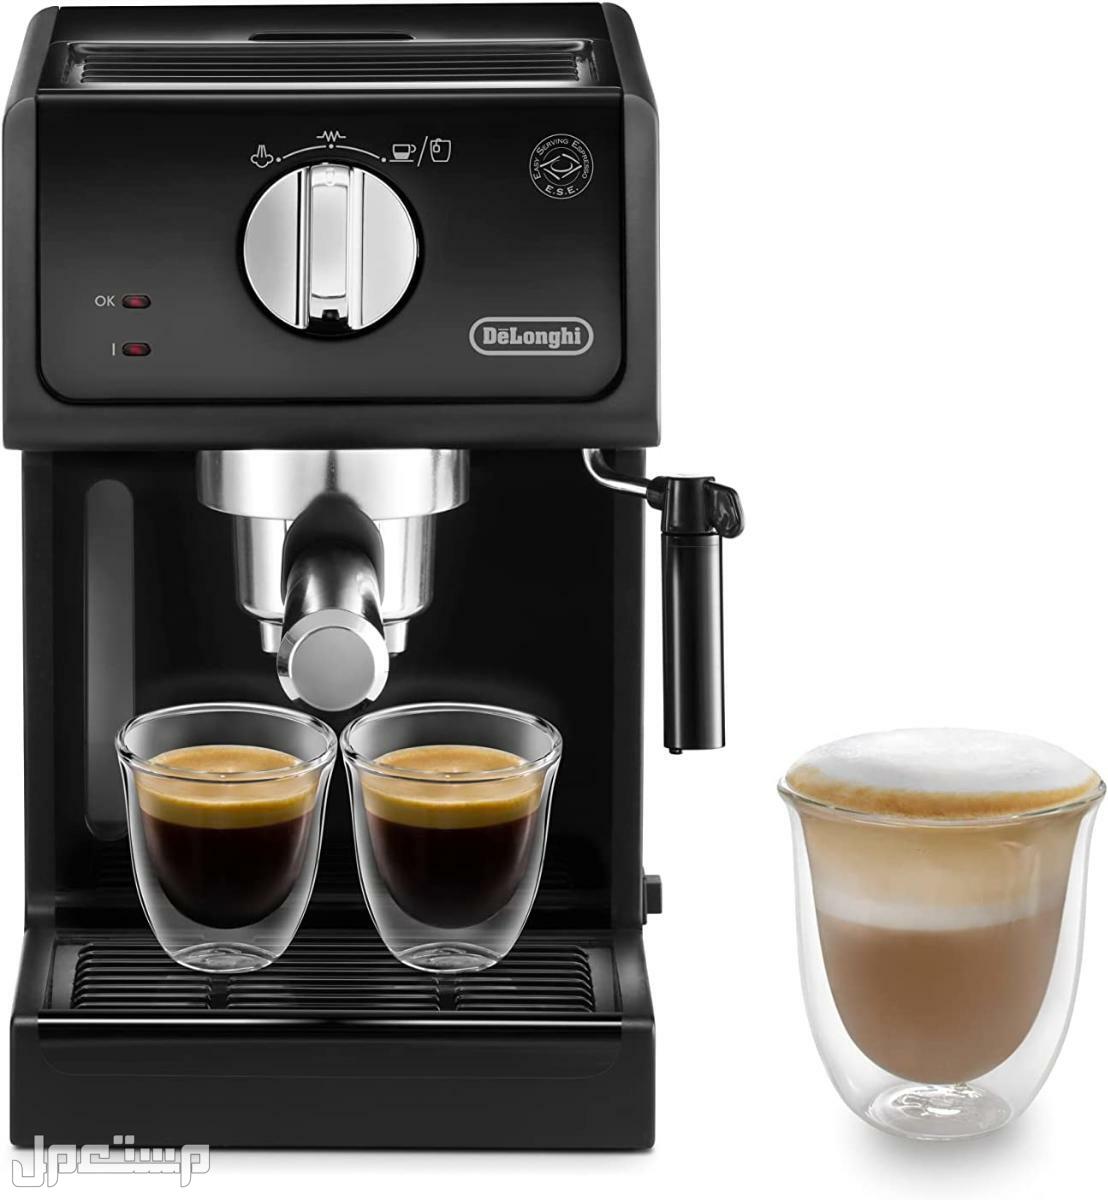 عيوب ومميزات ومواصفات وسعر ماكينة قهوة ديلونجى ديديكا في موريتانيا لماذا عليك شراء ماكينة قهوة ديلونجي ديديكا ؟